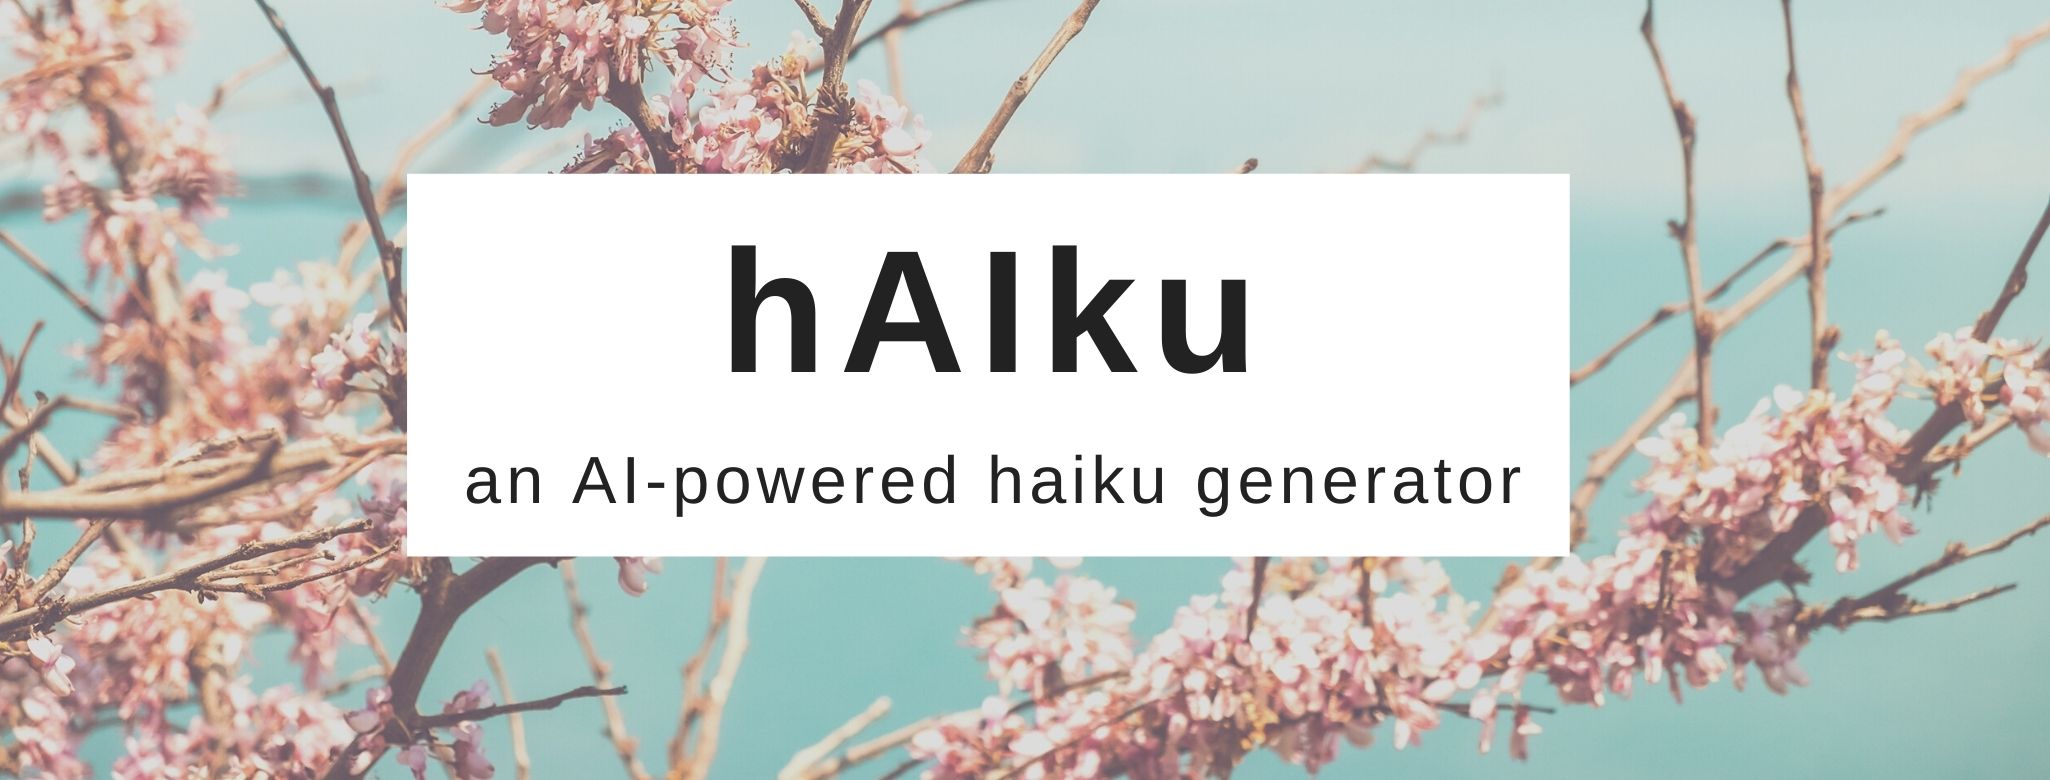 haiki culture